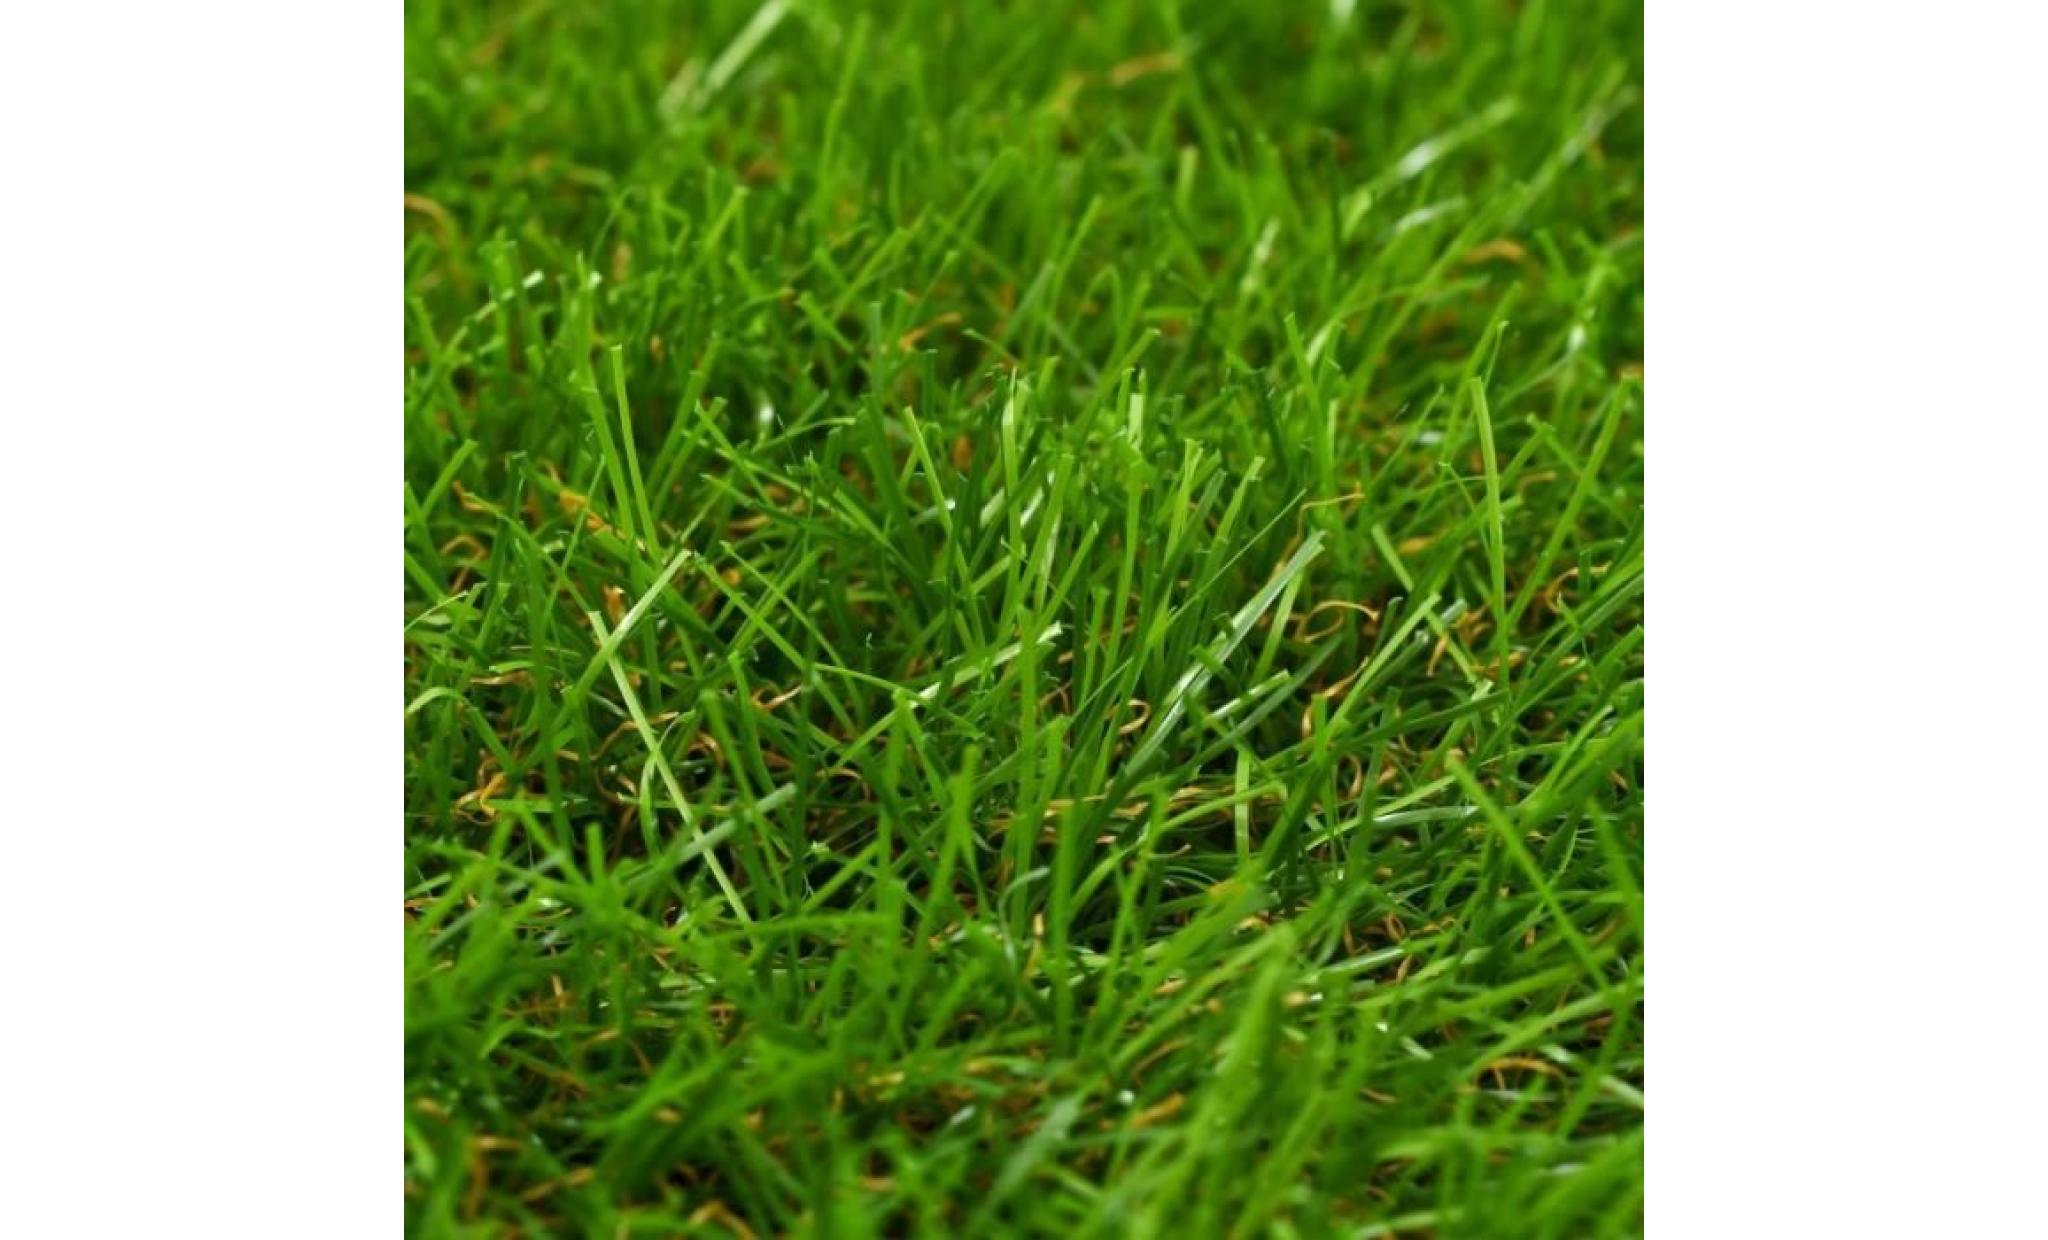 r28 ce gazon artificiel de 40 mm peut vous servir a creer une veritable pelouse, qui necessite un minimum d'entretien, m